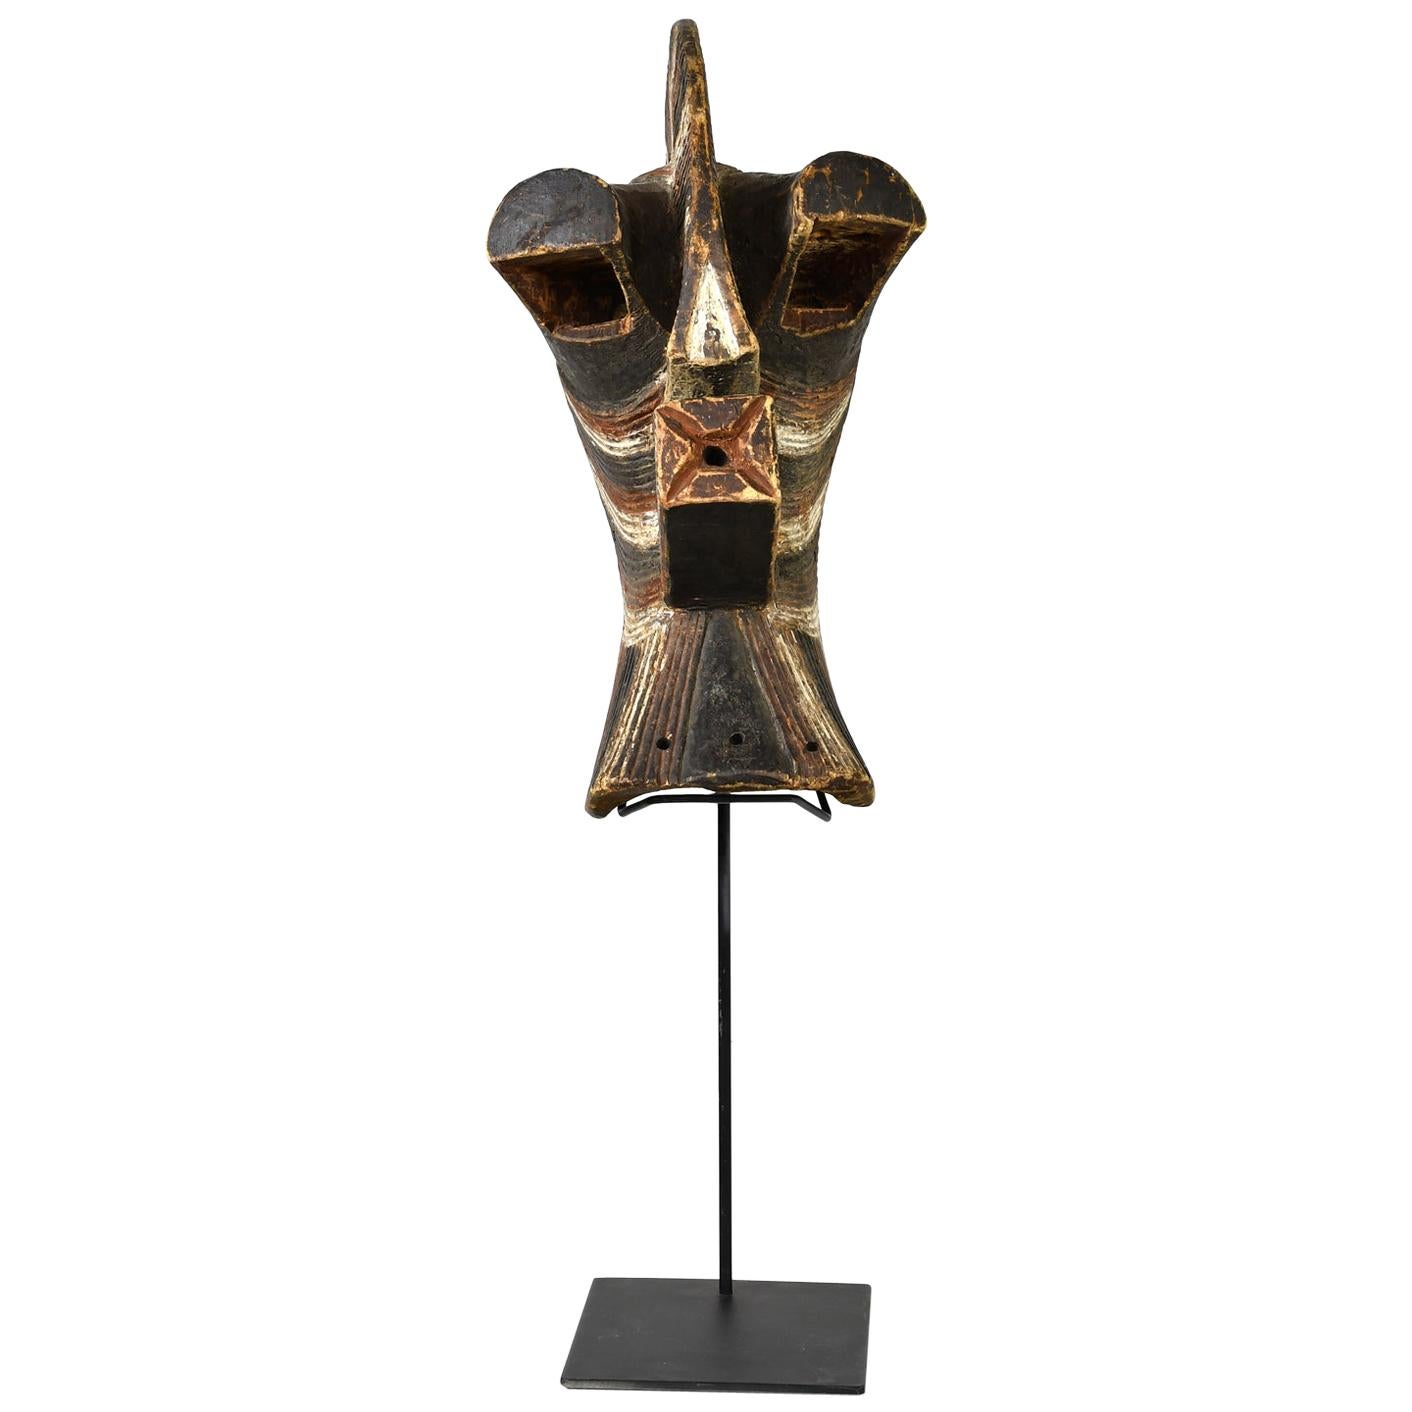 Songye "Male" Kifwebe Ceremonial Mask, Democratic Republic of Congo, Africa 1900